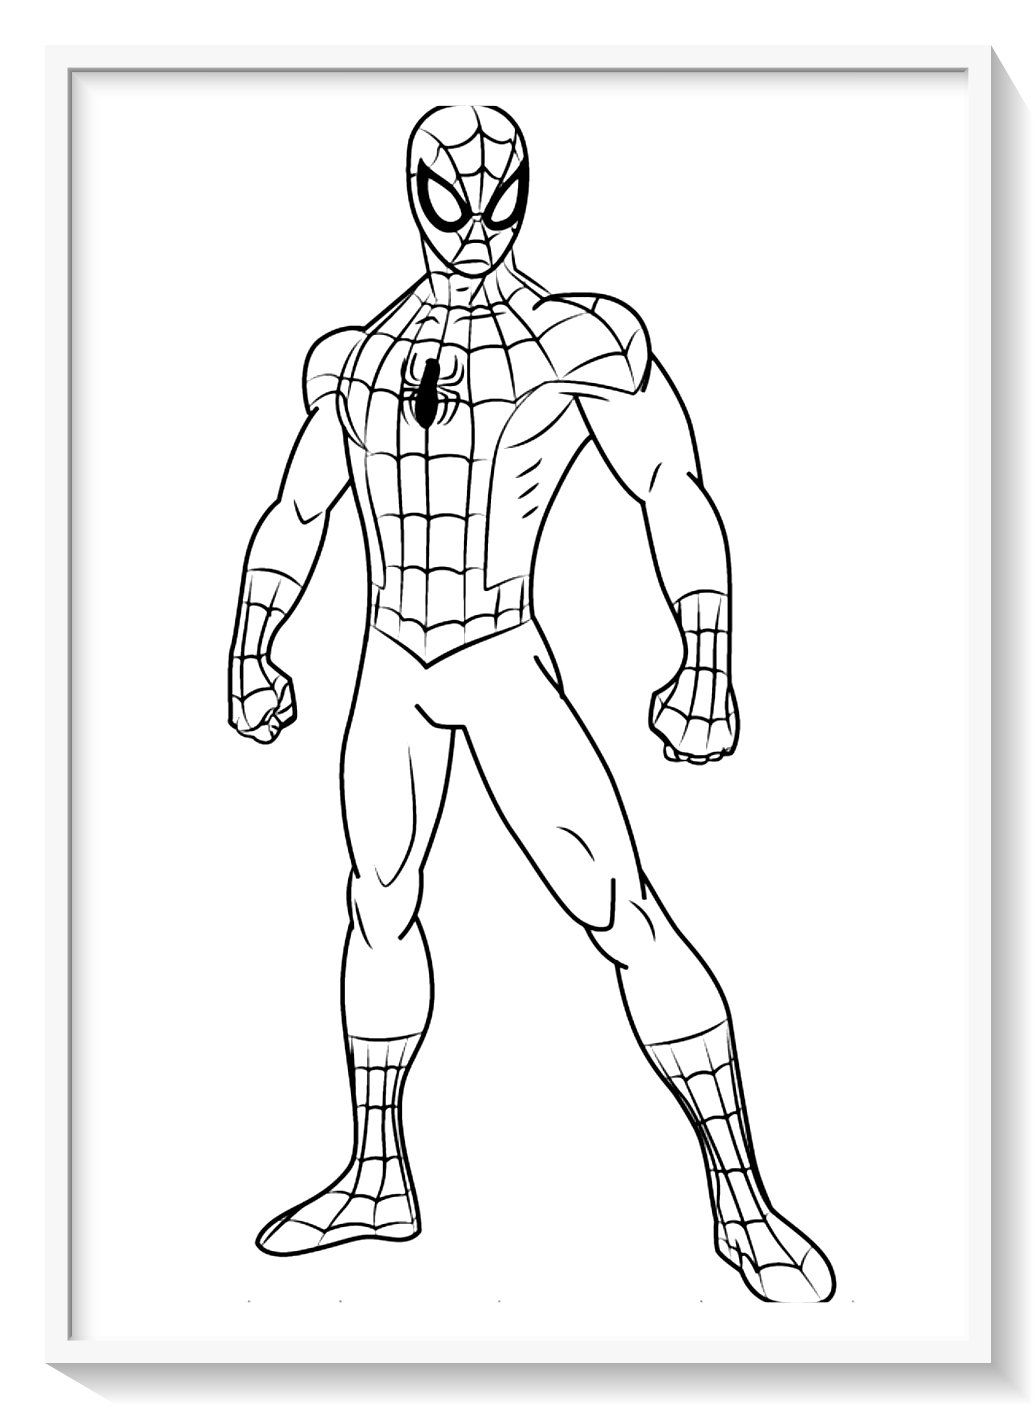 Pued imprimir o editar online tas imãgen â encuentra fichas de spiderman paâ spiderman dibujo para colorear hombre araãa para pintar spiderman para pintar